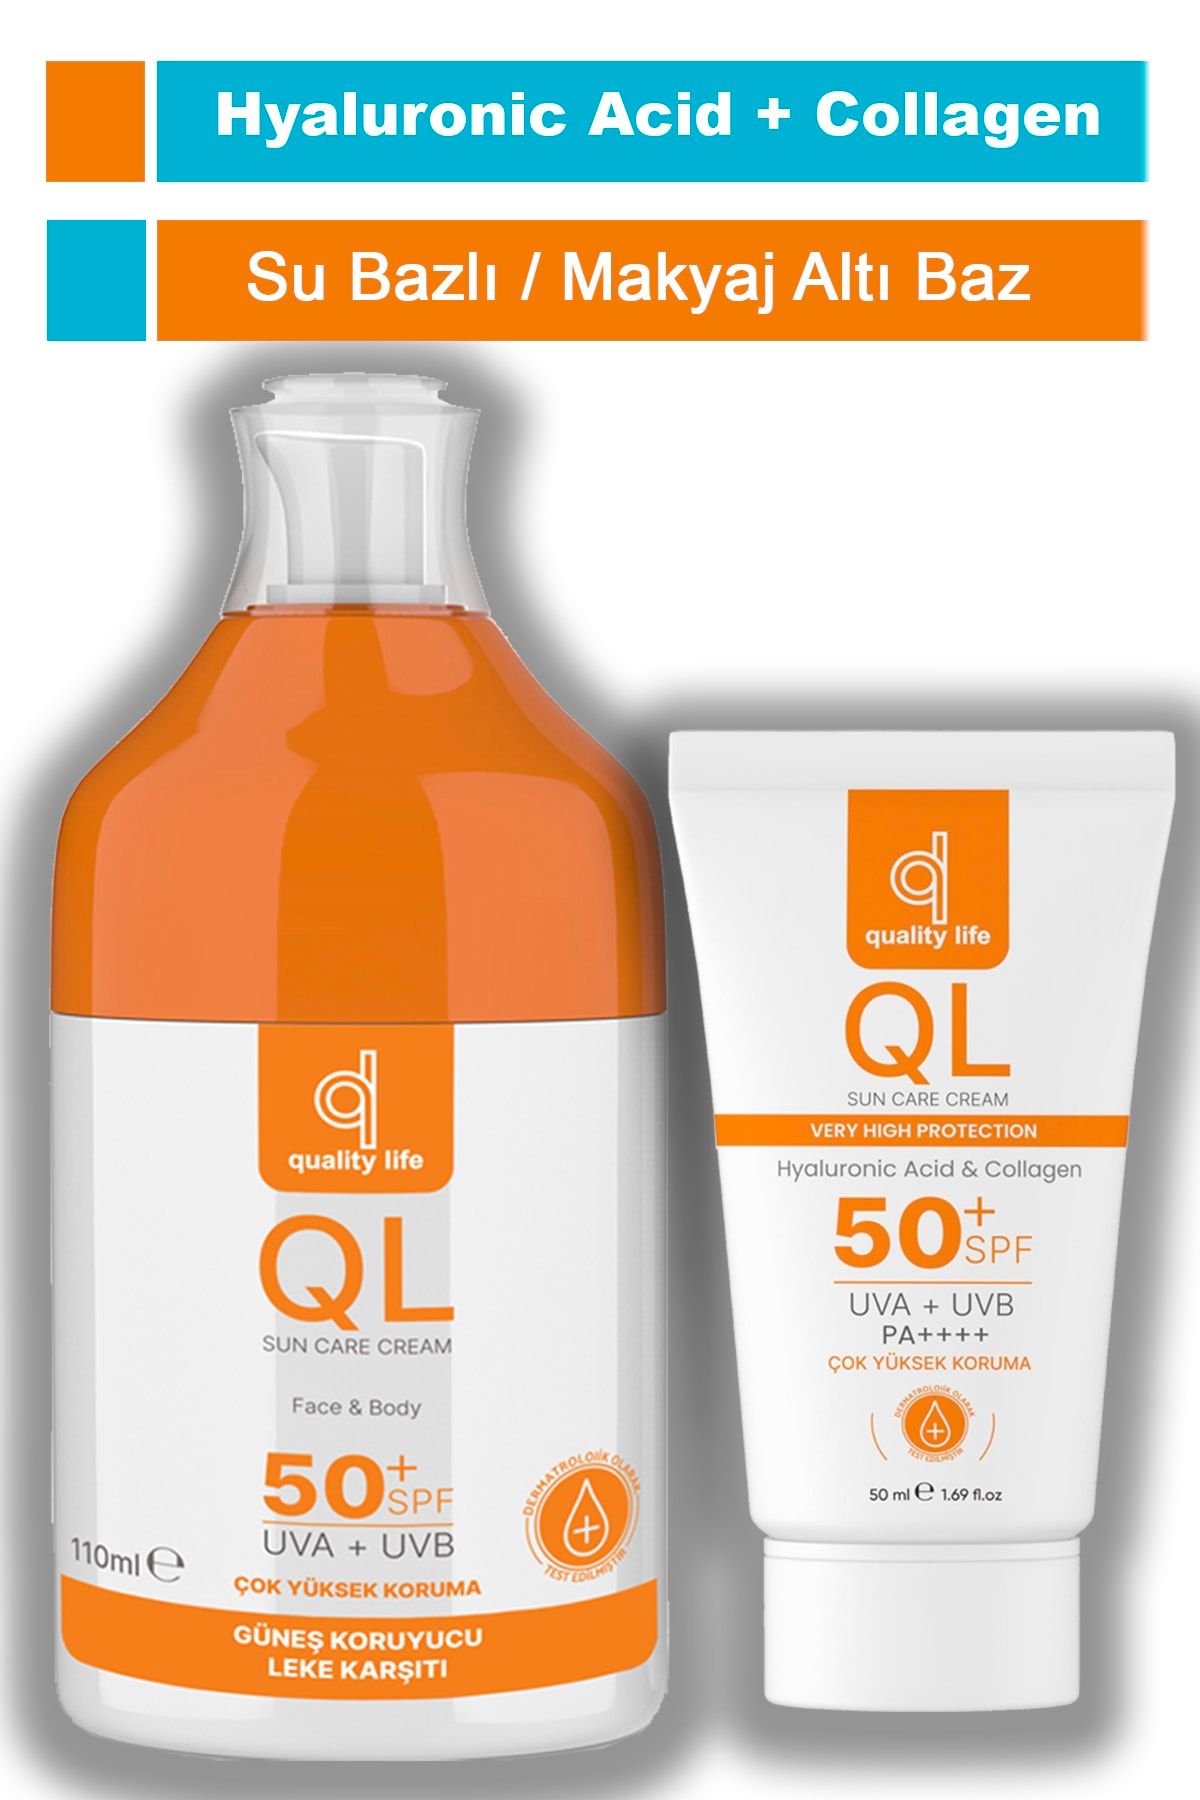 Quality Life Ql 110 ml Ve 50 ml Yüz Ve Vücut Güneş Kremi Seti - Leke Karşıtı Hyaluronik Asit Ve Collagen